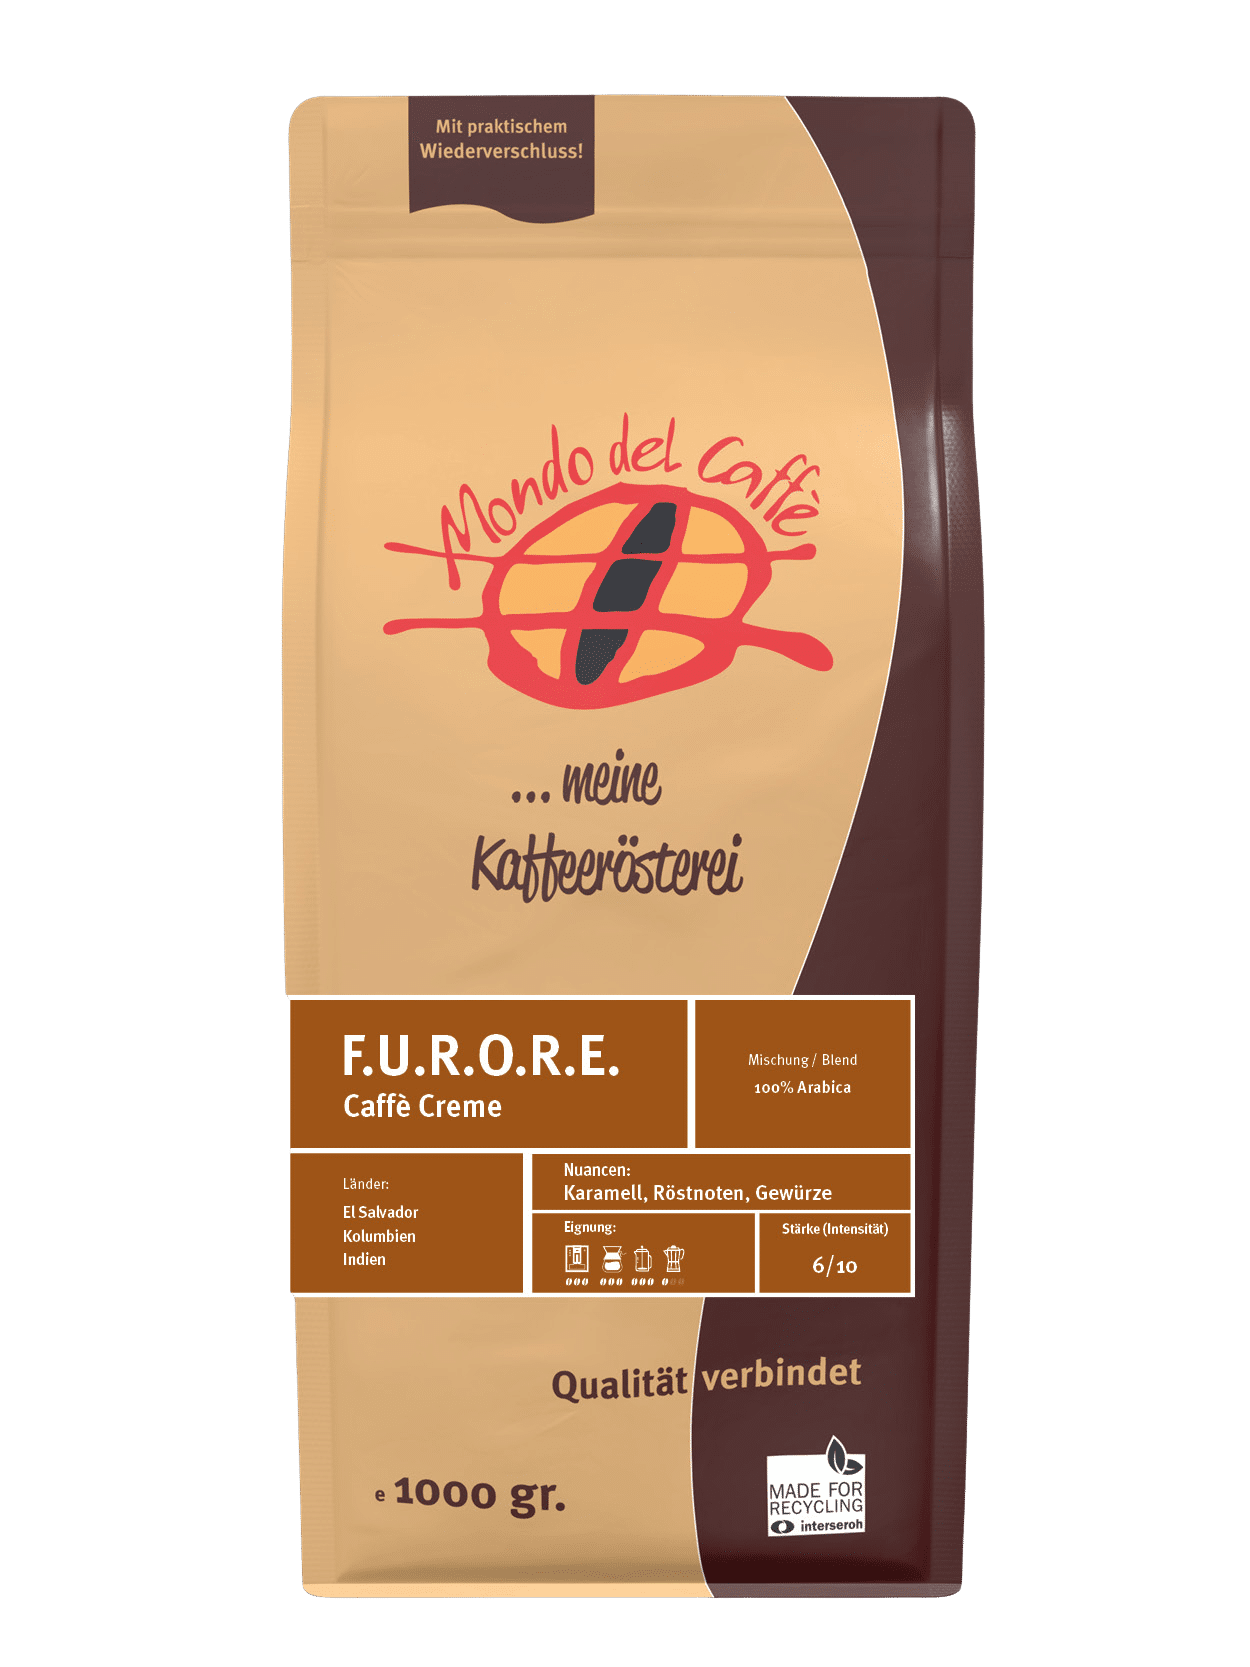 F.U.R.O.R.E. (Furore, Caffè Crema) 100% Arabica